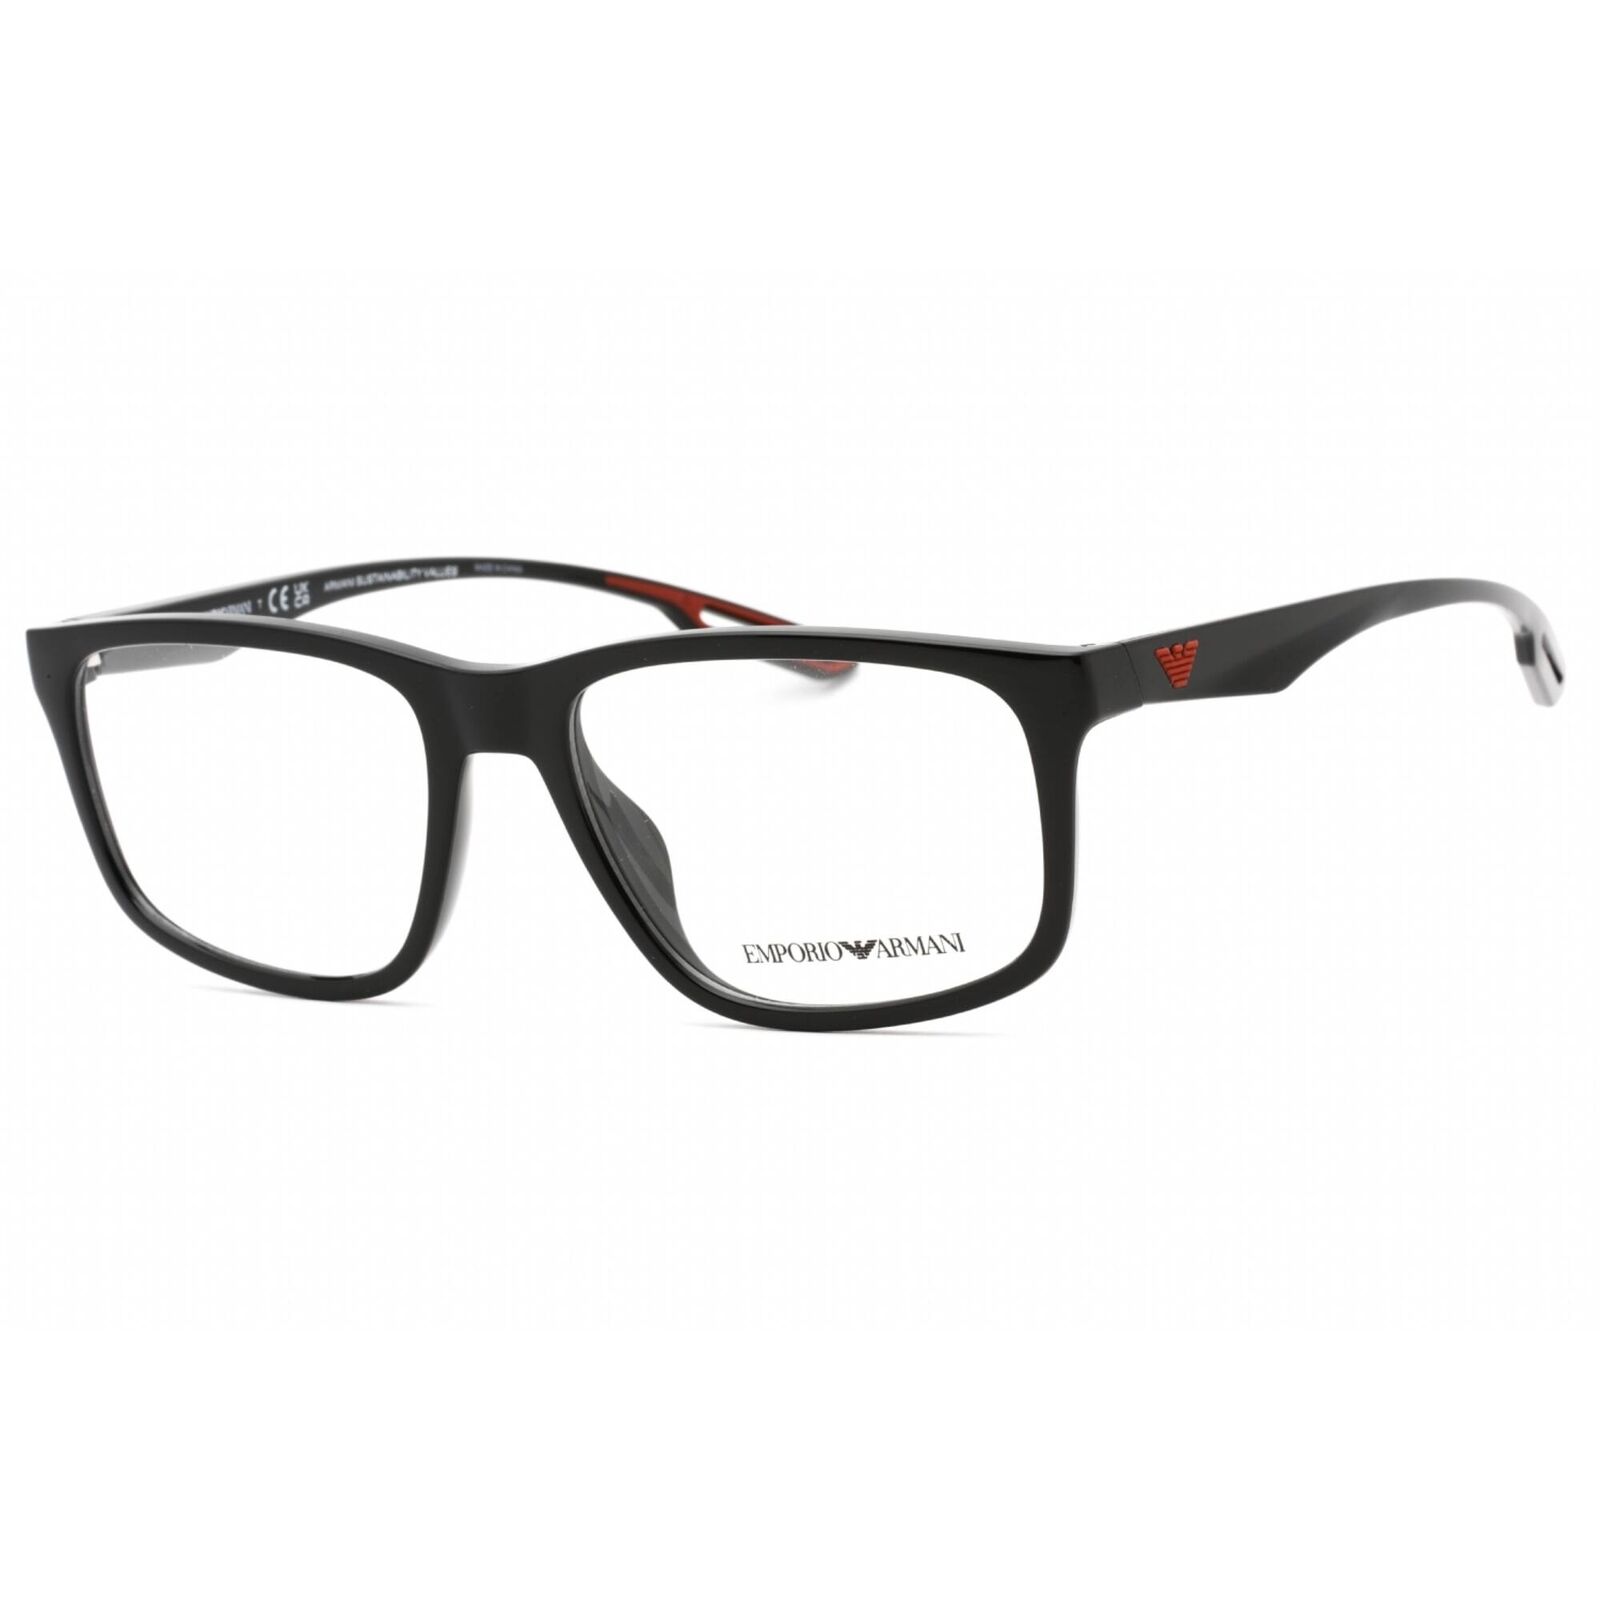 Emporio Armani Men's Eyeglasses Shiny Black Plastic Full Rim Frame 0EA3209U 5017 Emporio Armani 0EA3209U 5017